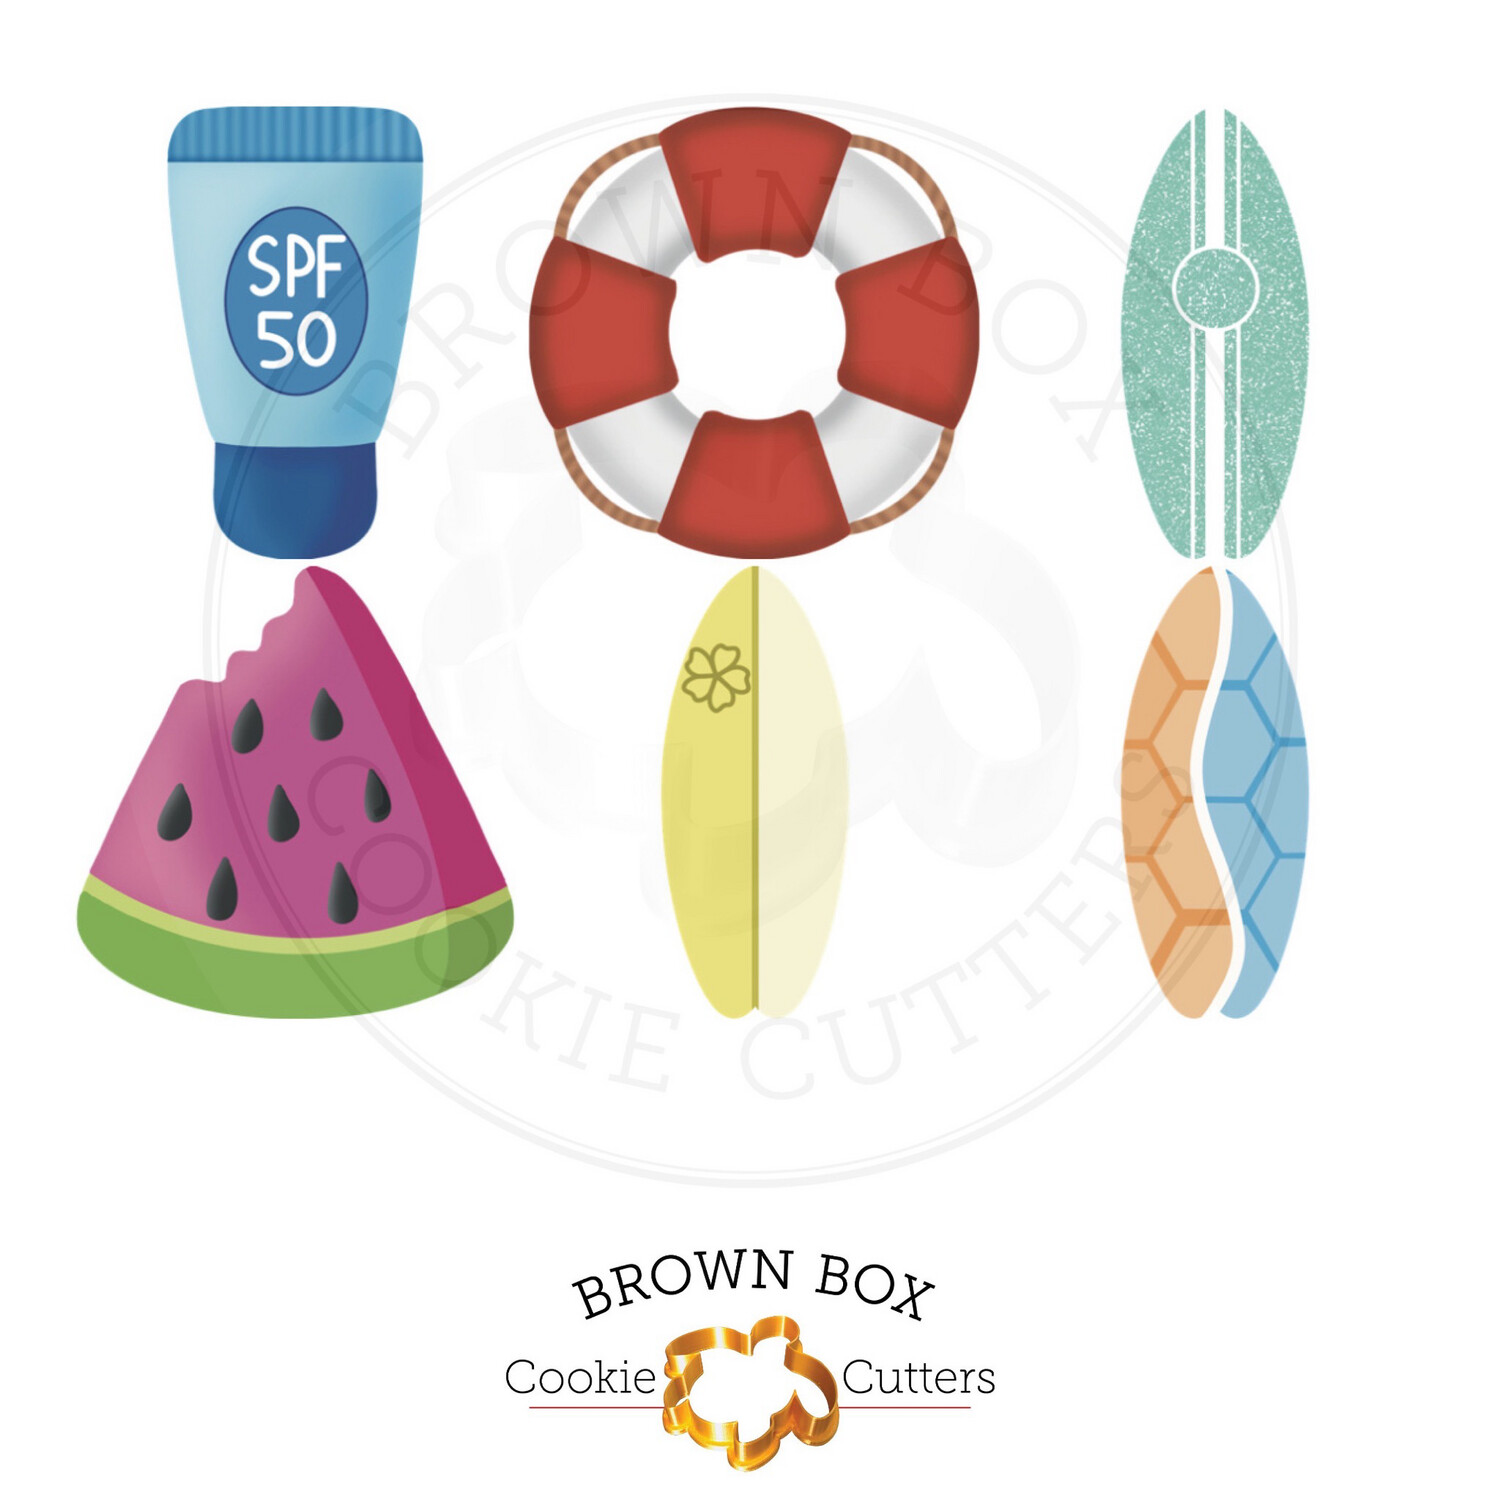 June Brown Box: Summer Basics Cookie Cutter Set